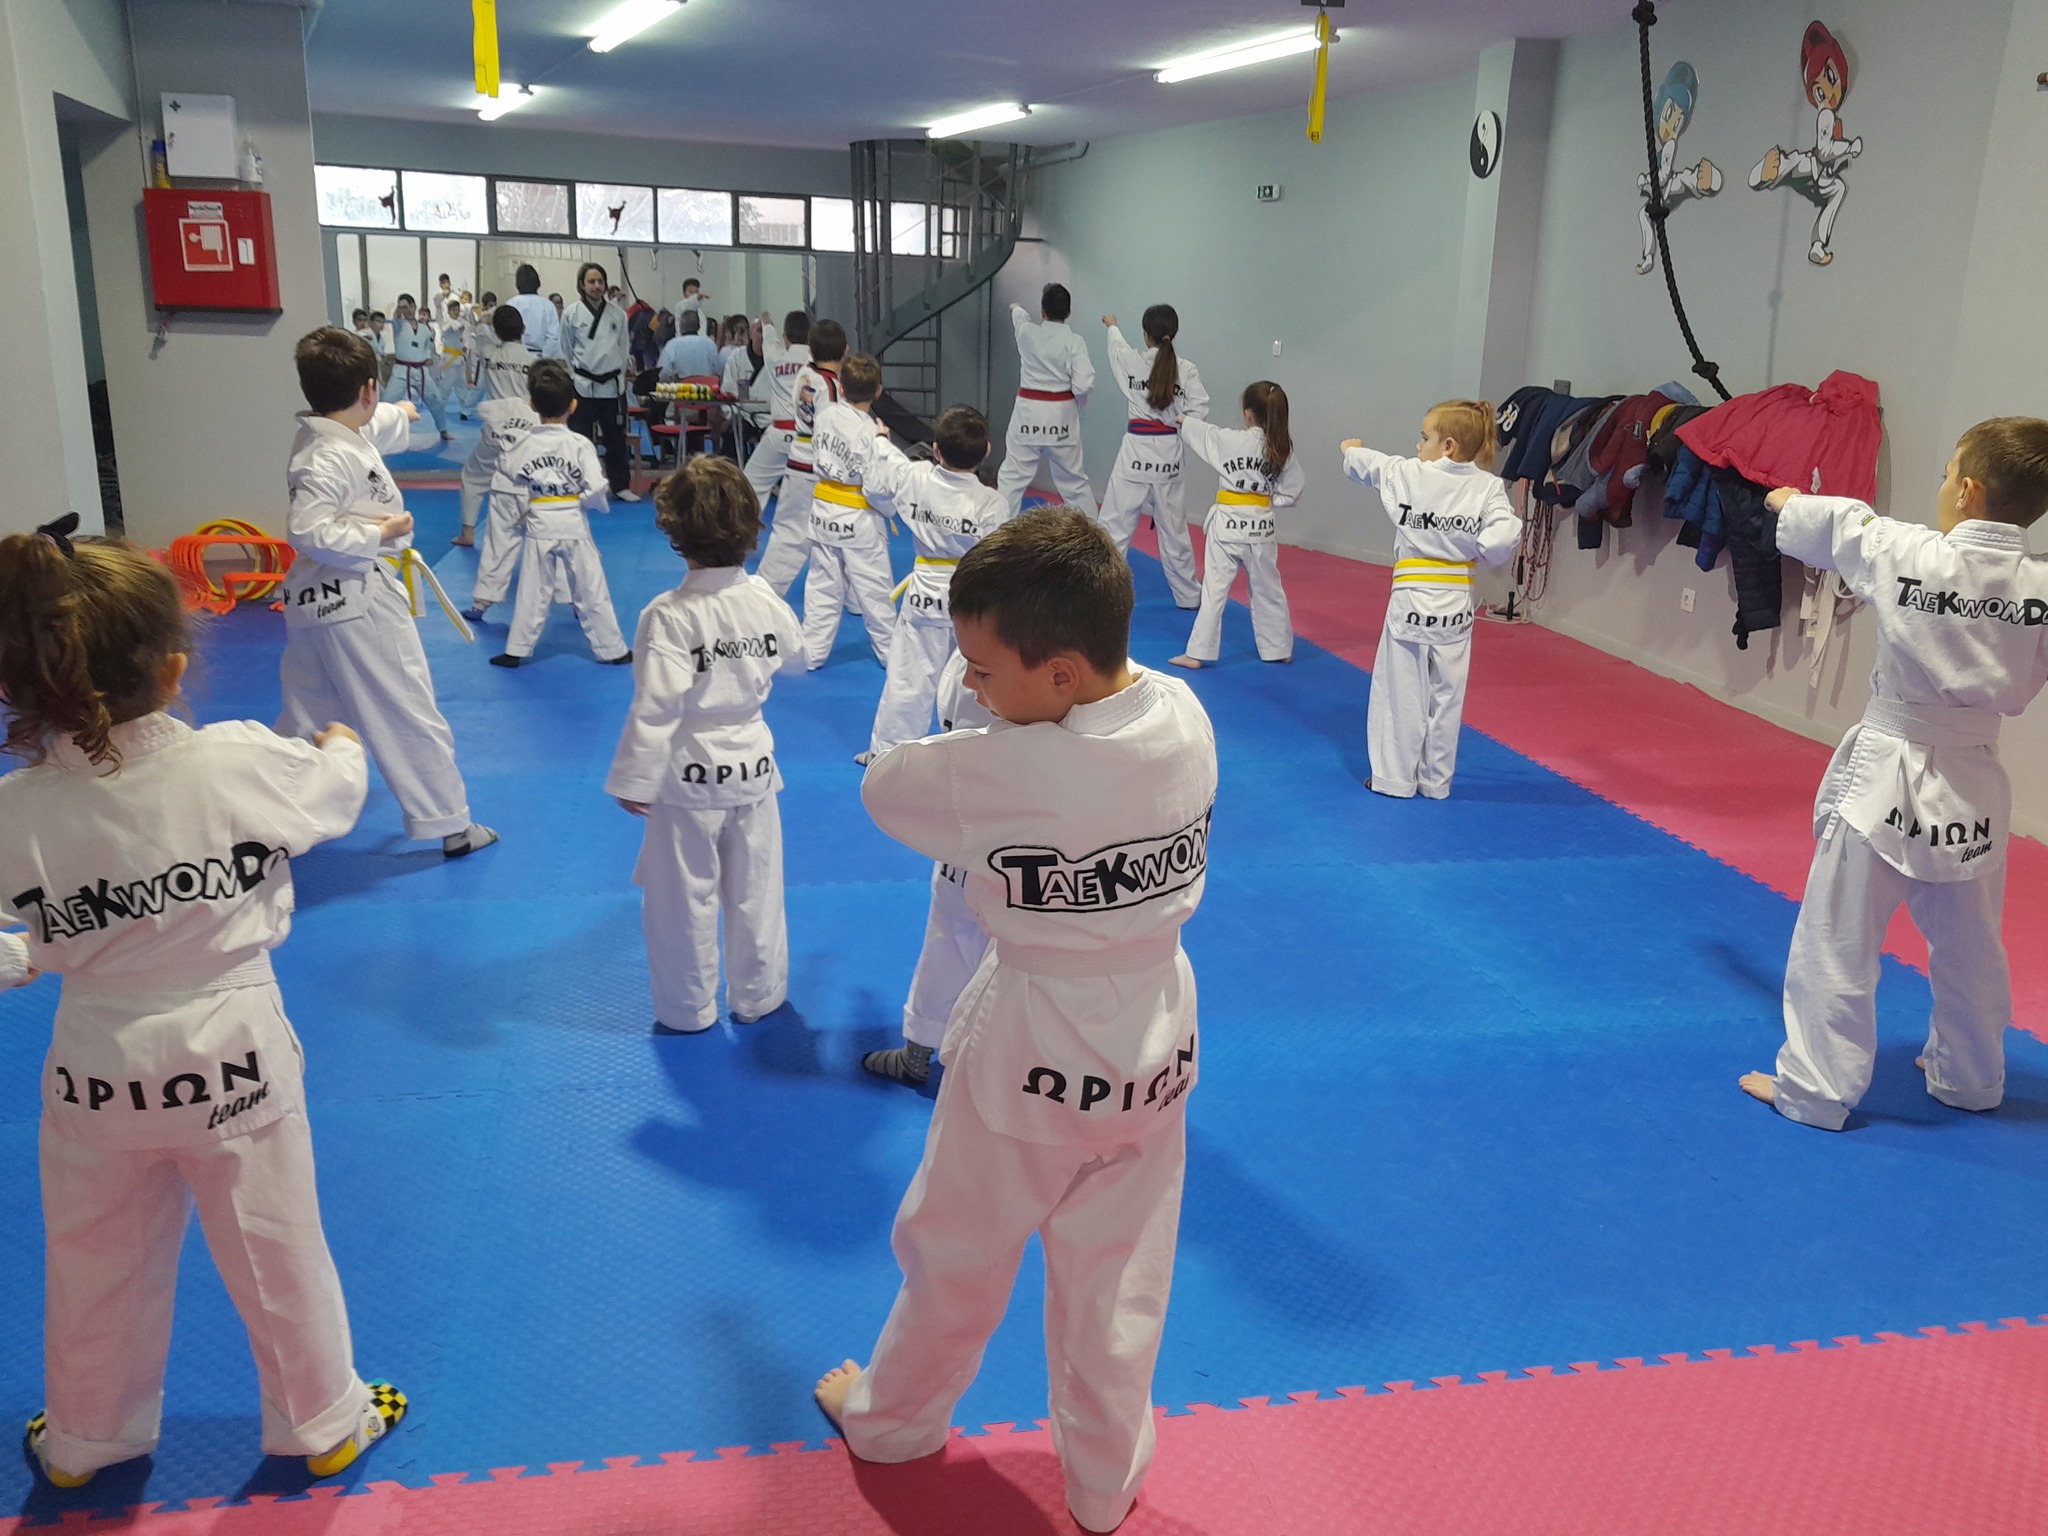 orion-alimos-taekwondo-eksetaseis-exromon-zonon-sportshunter